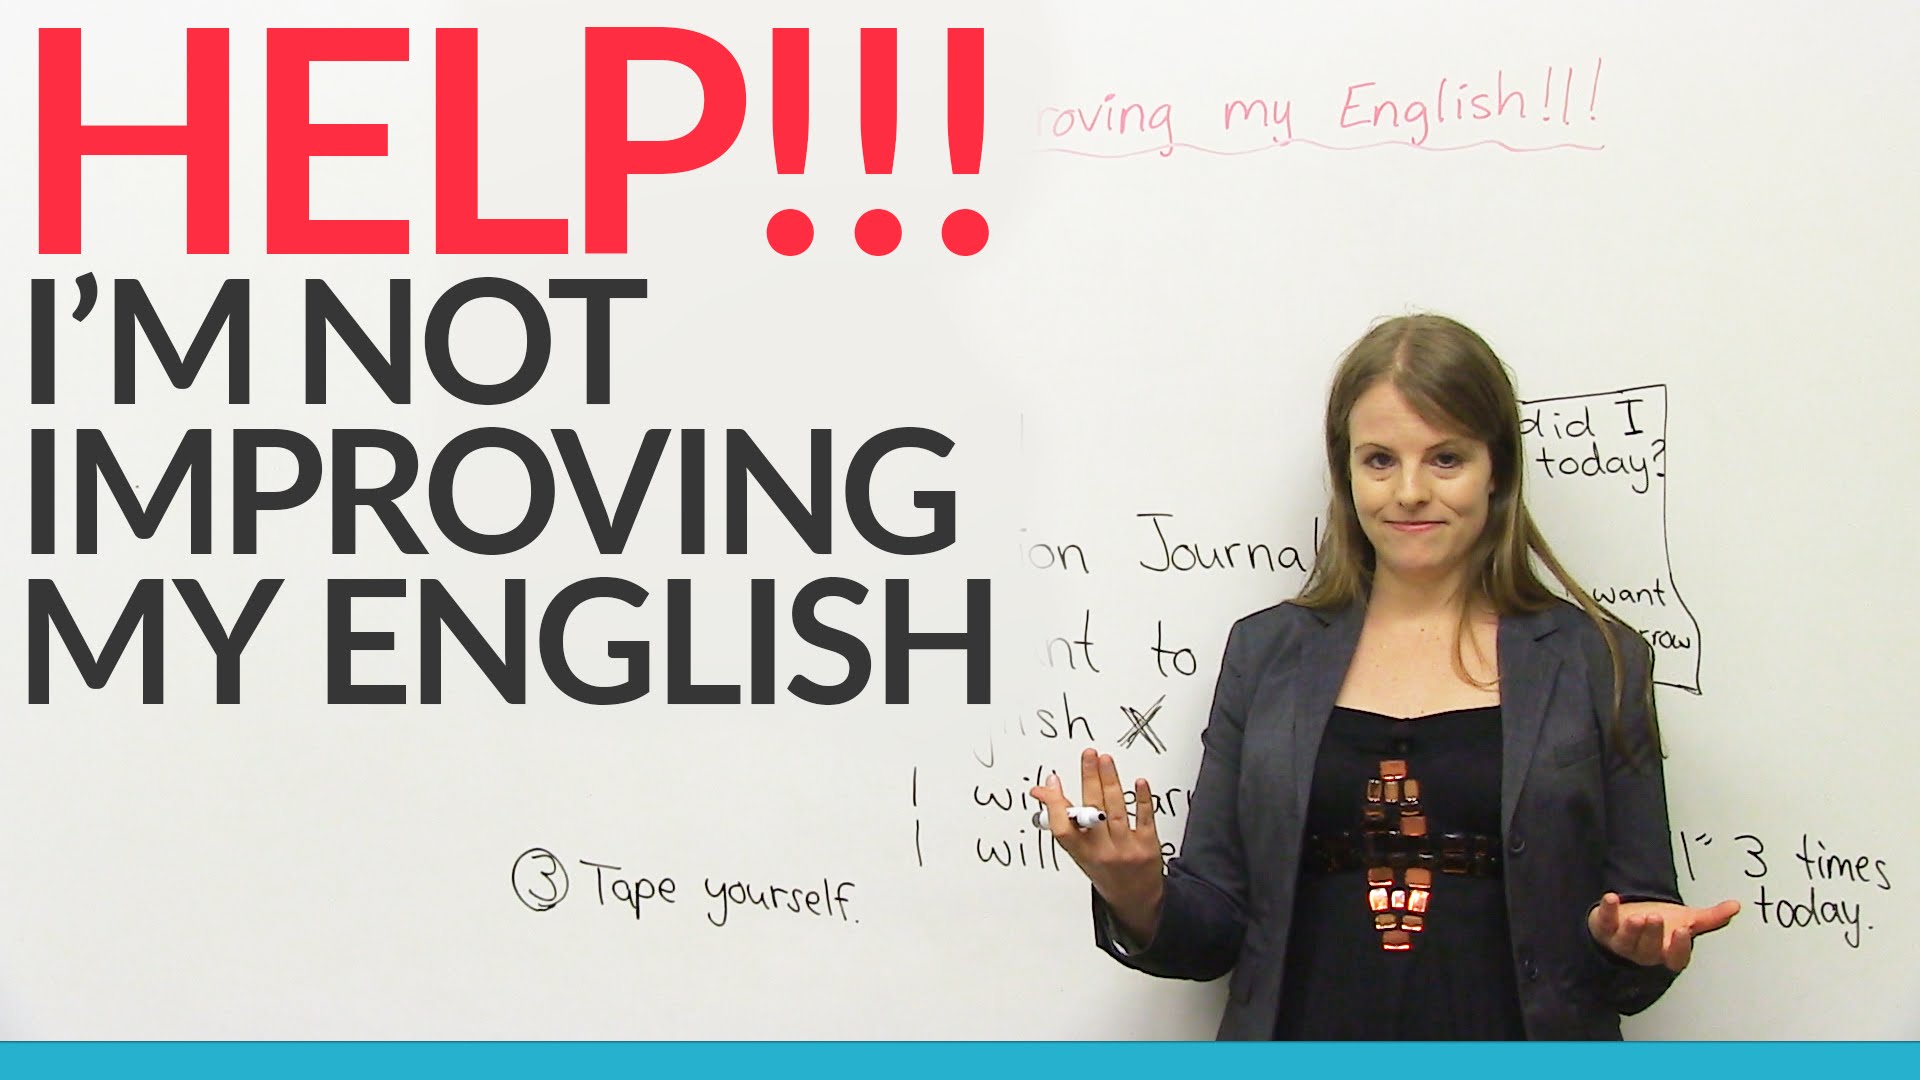 englische grammatikfehler - wie verbessern?